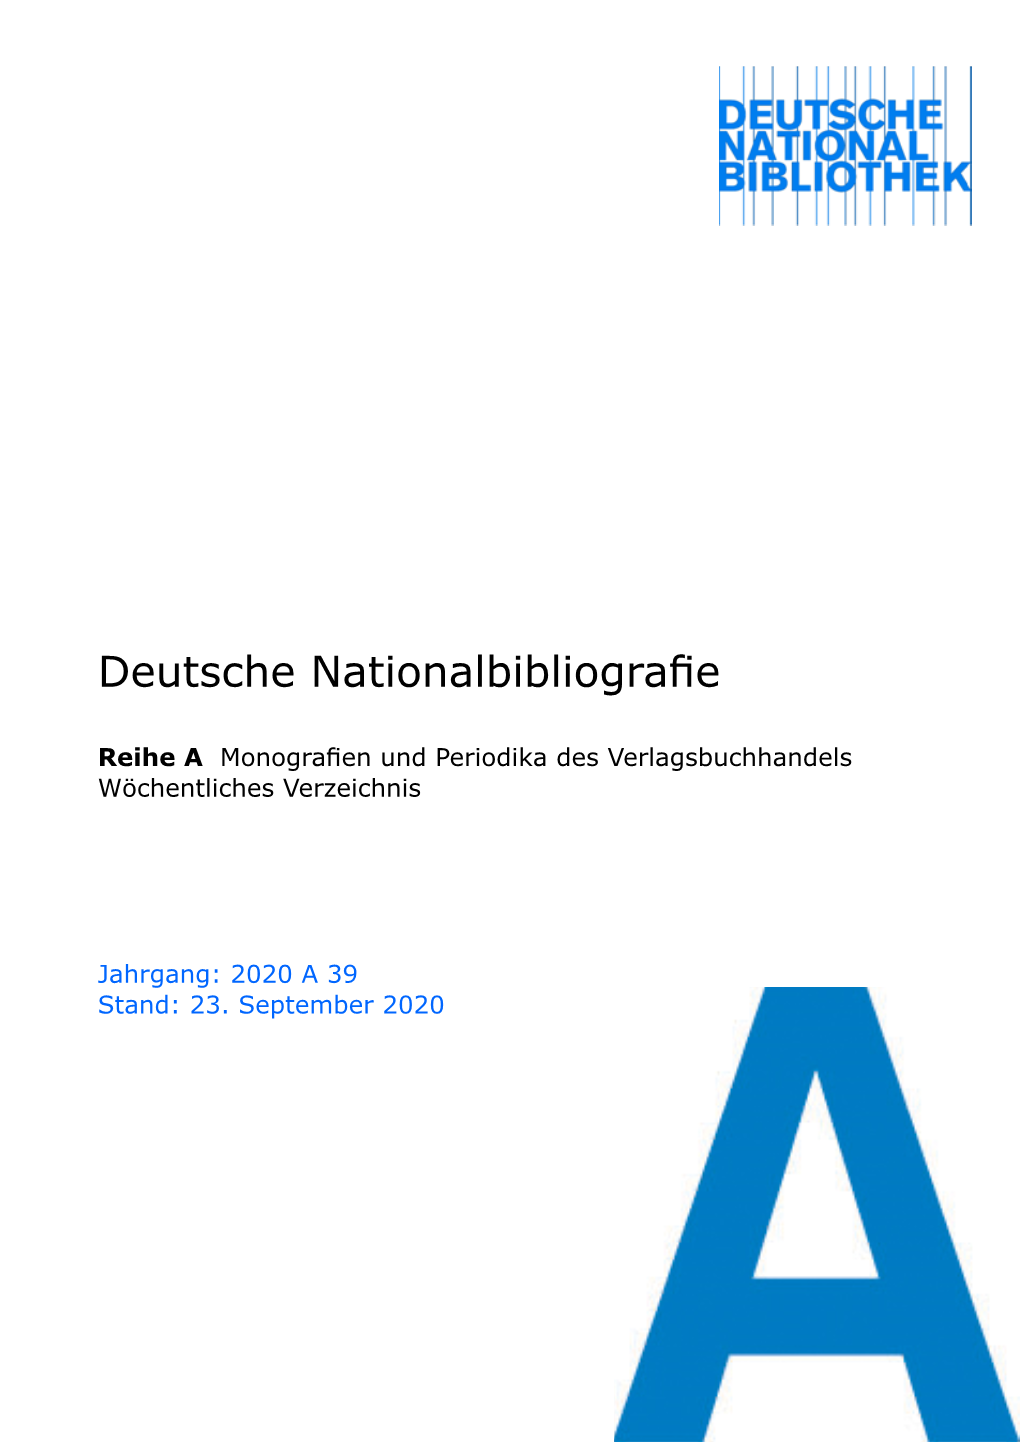 Deutsche Nationalbibliografie 2020 a 39